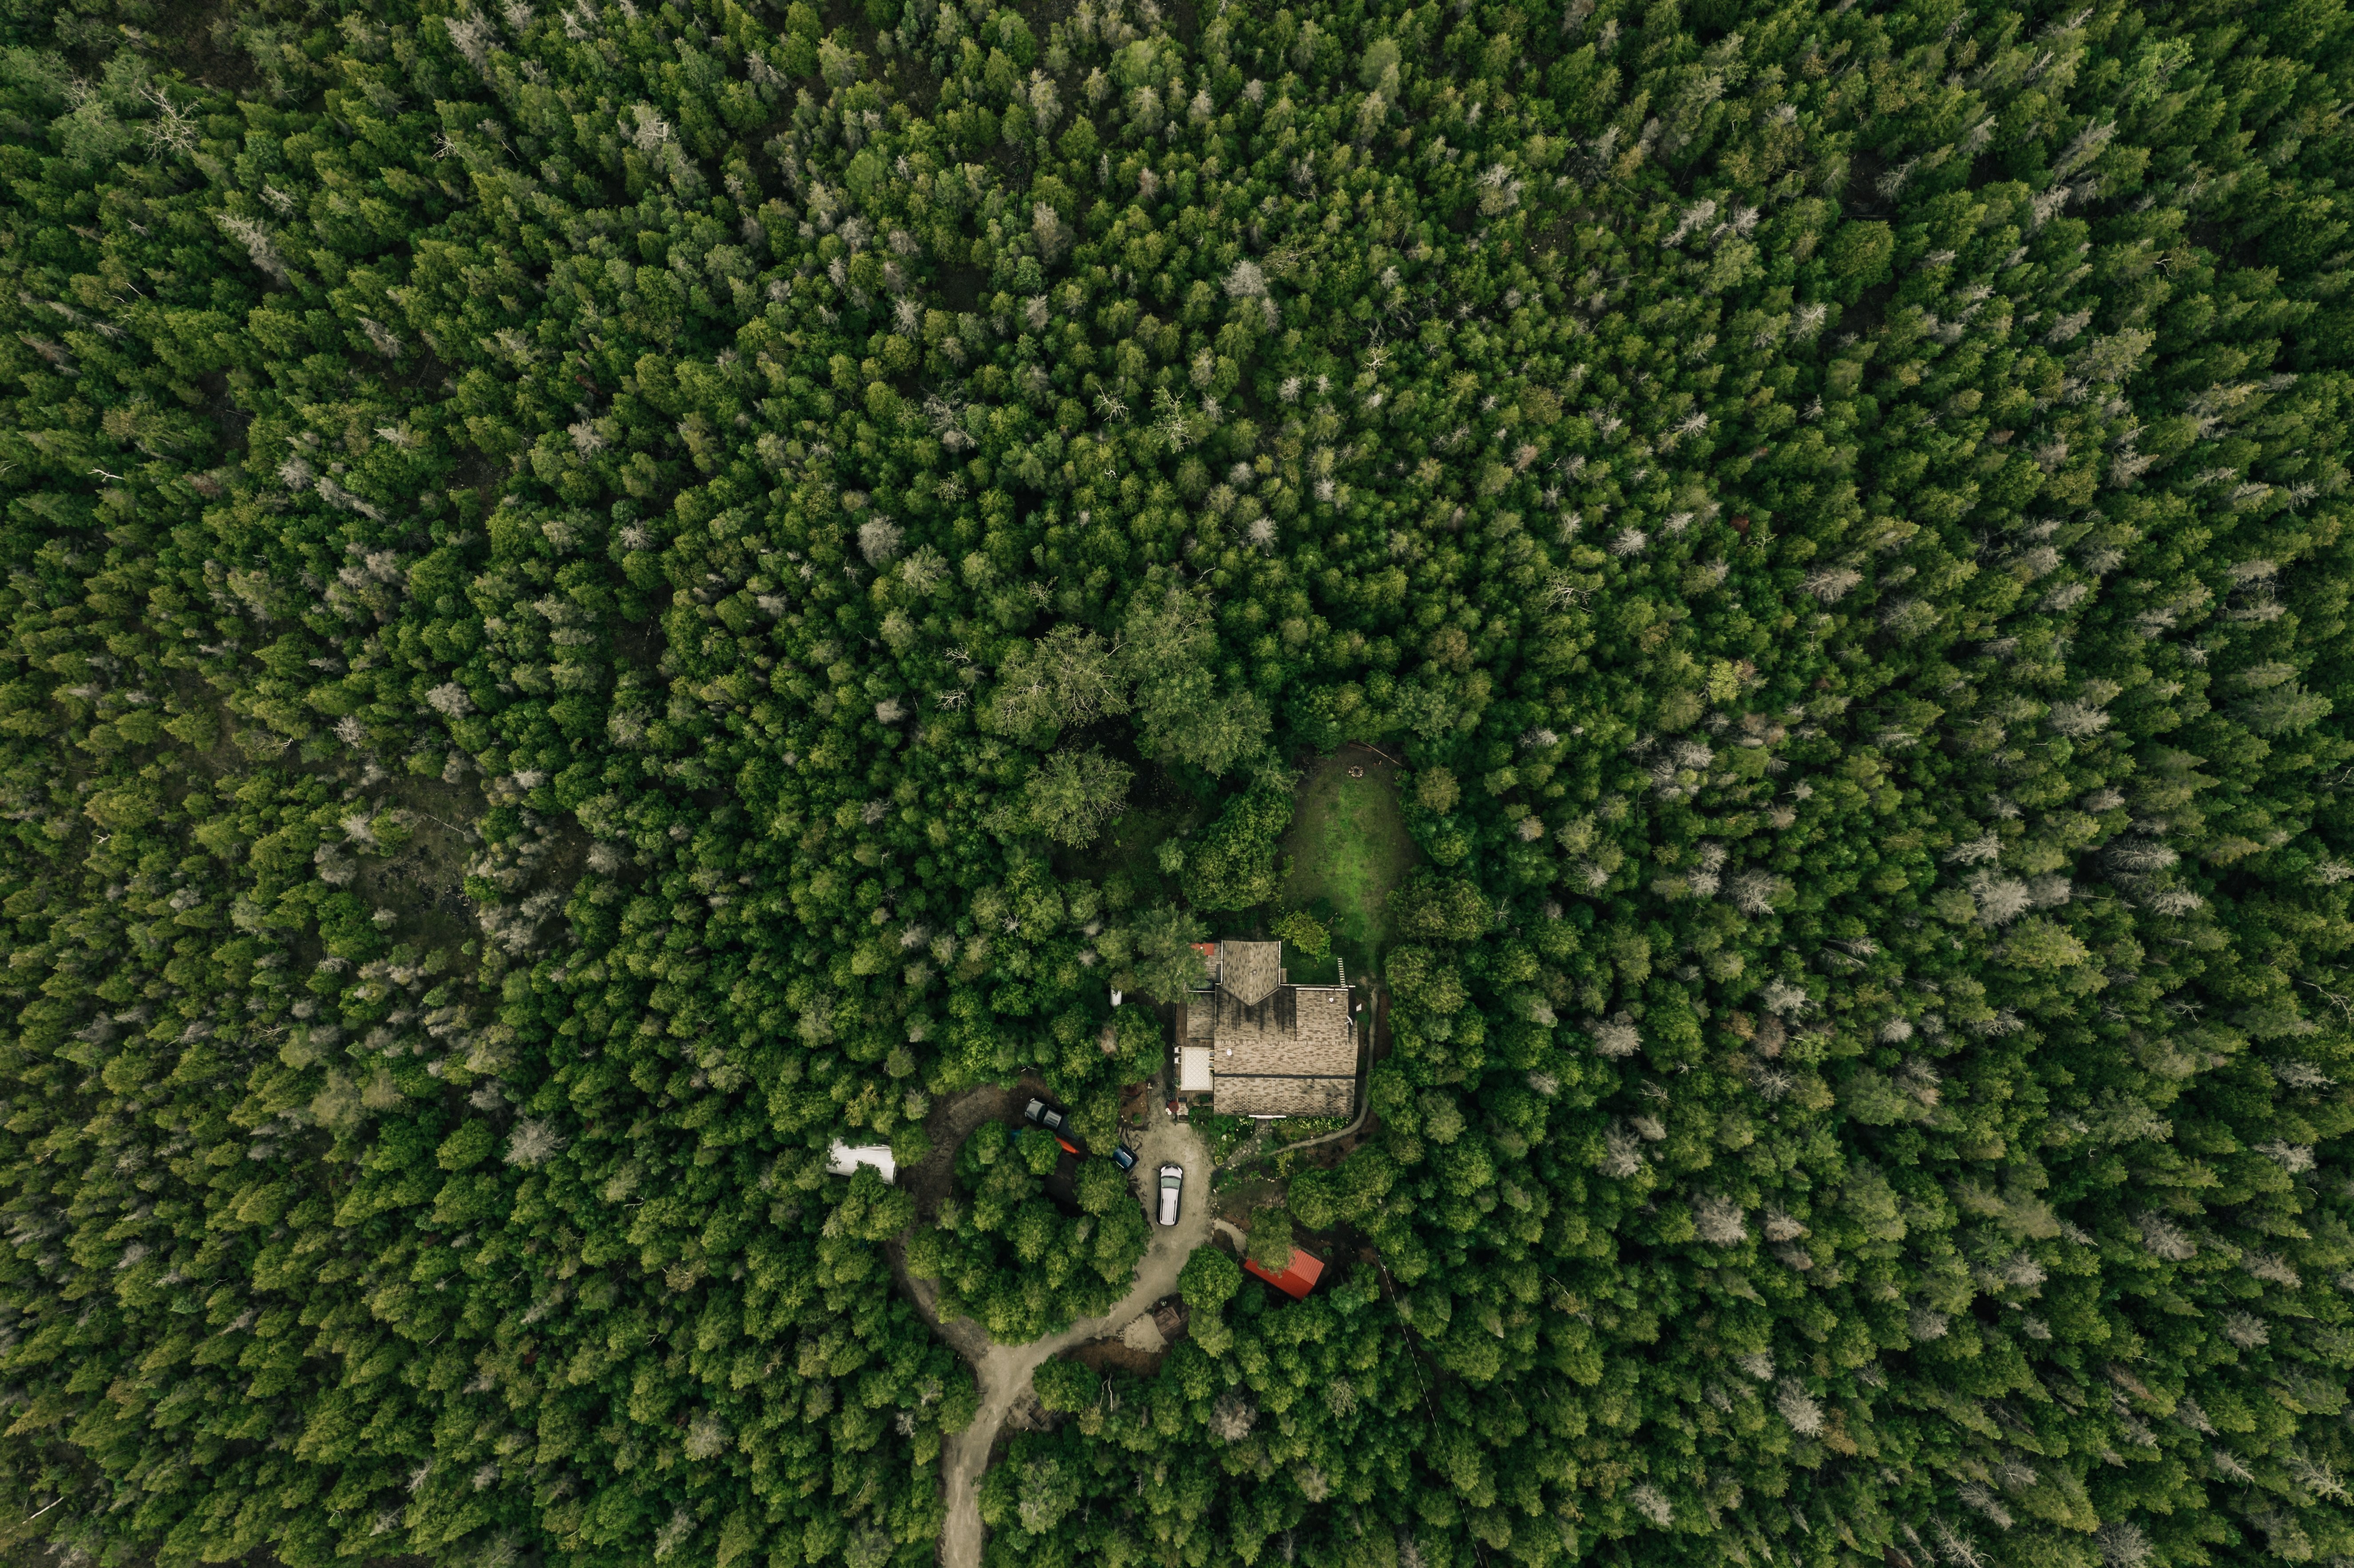 Maison nichée dans une forêt dense Photo